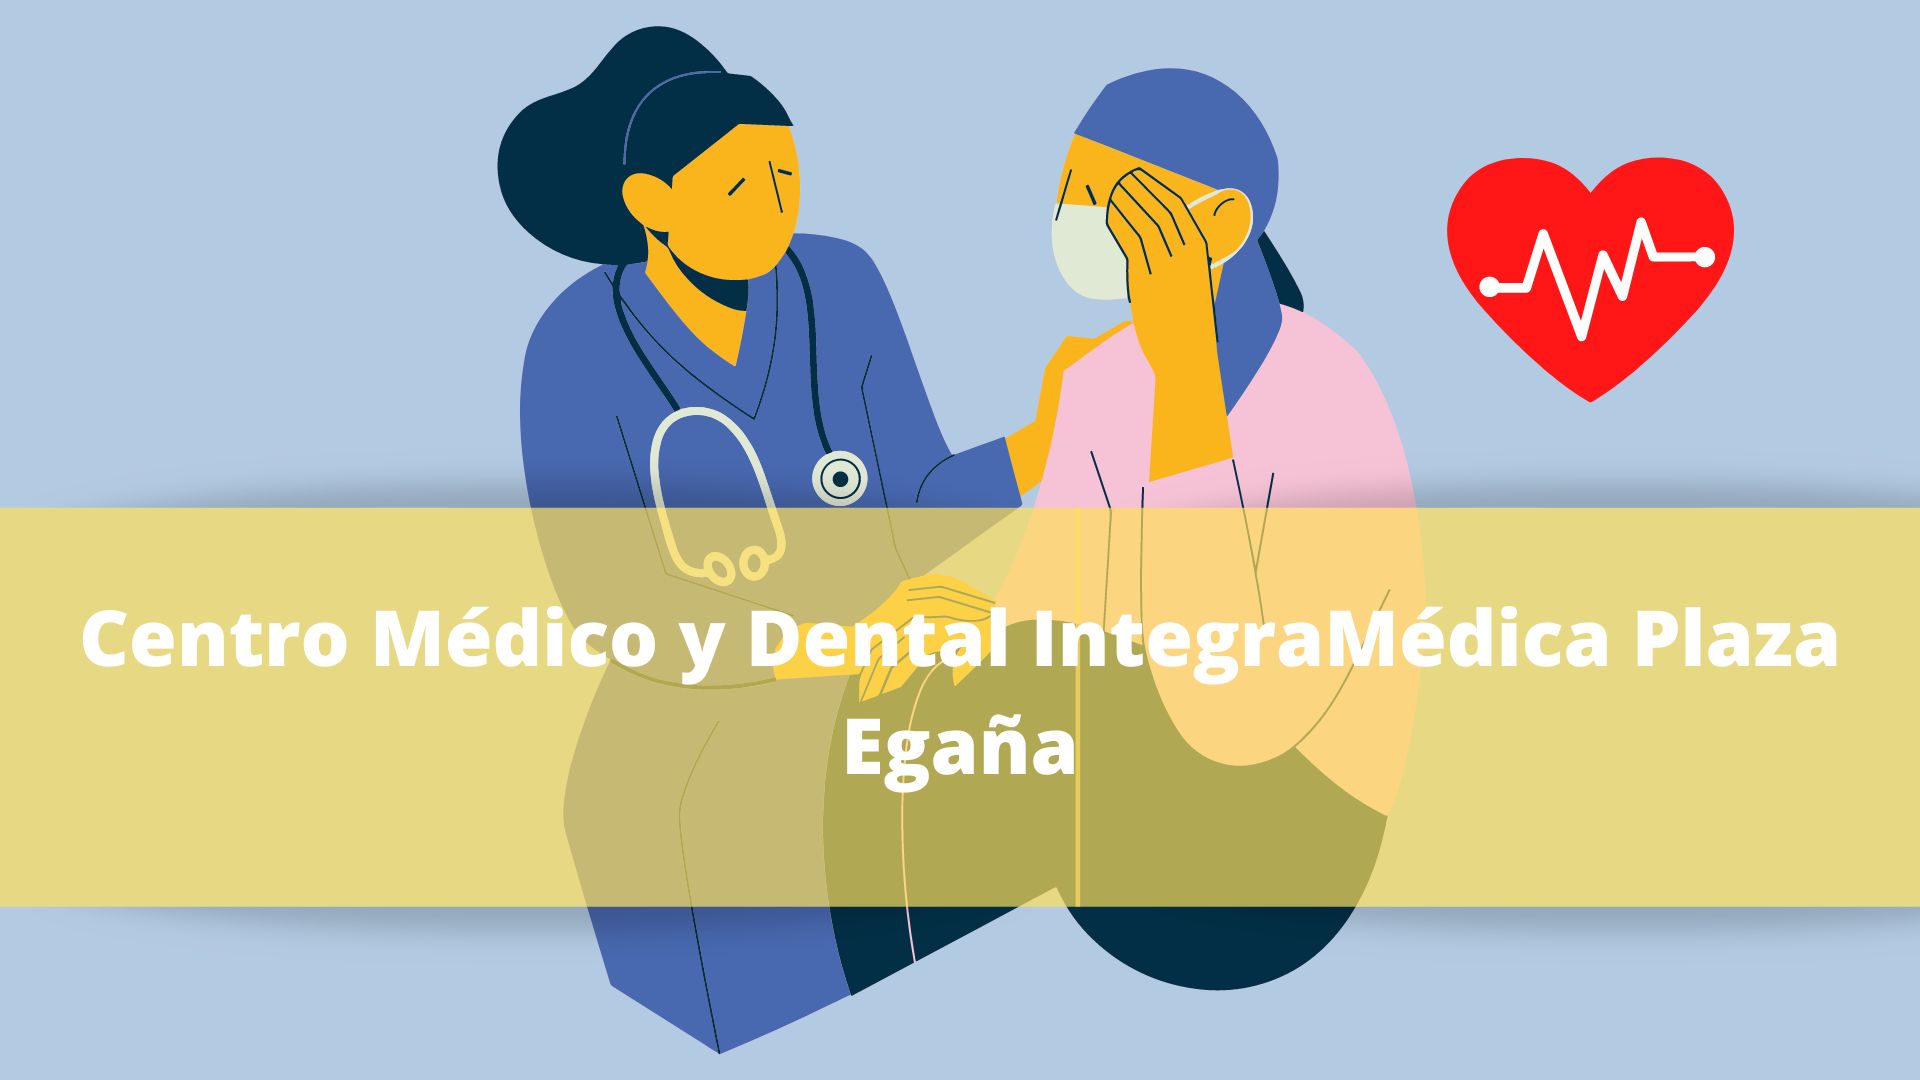 Centro Médico y Dental IntegraMédica Plaza Egaña